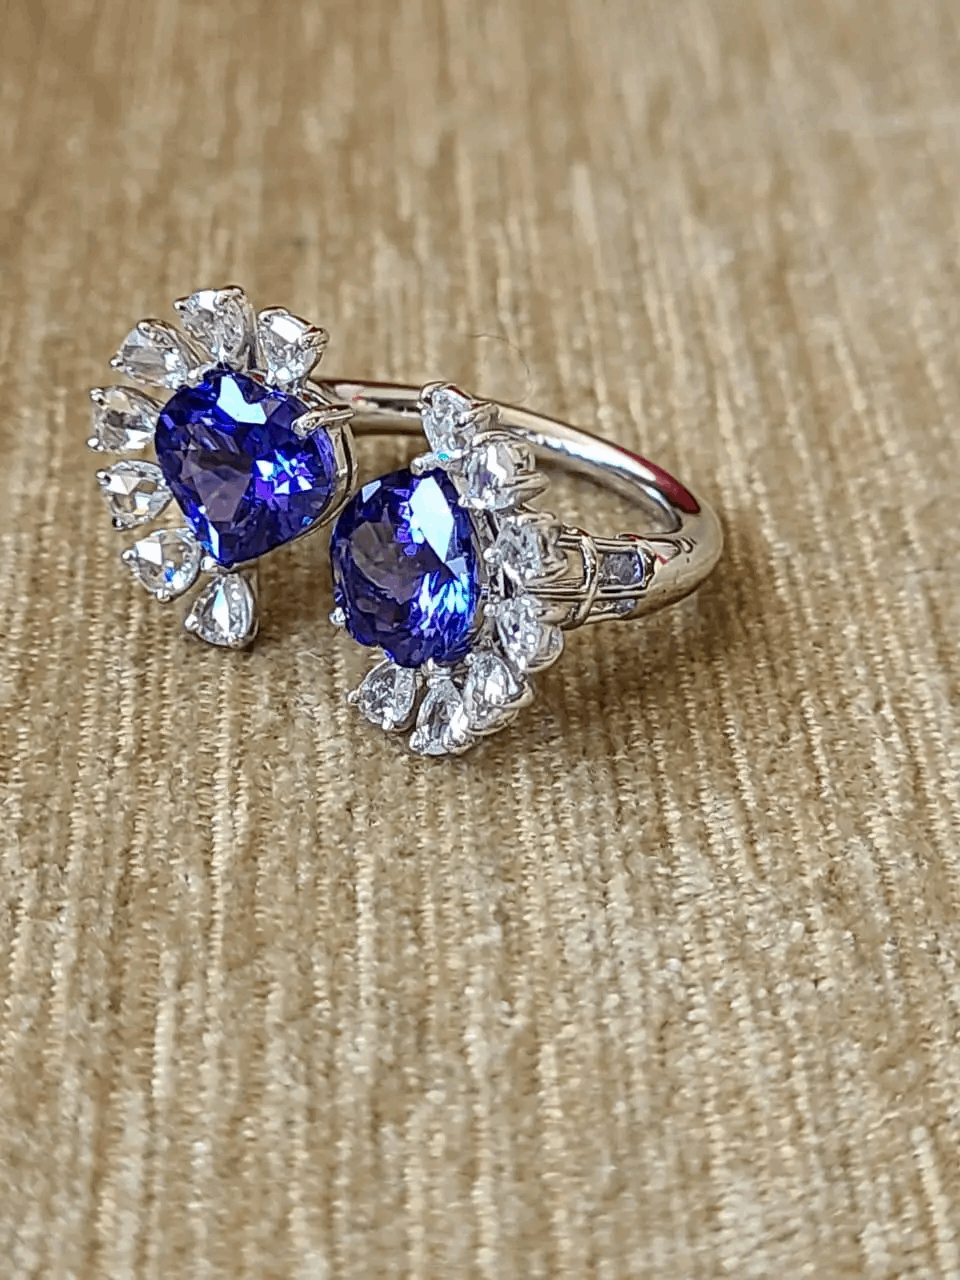 Tanzanite Set in 18K White Gold & Rose Cut Diamonds Cocktail/ Engagement Ring